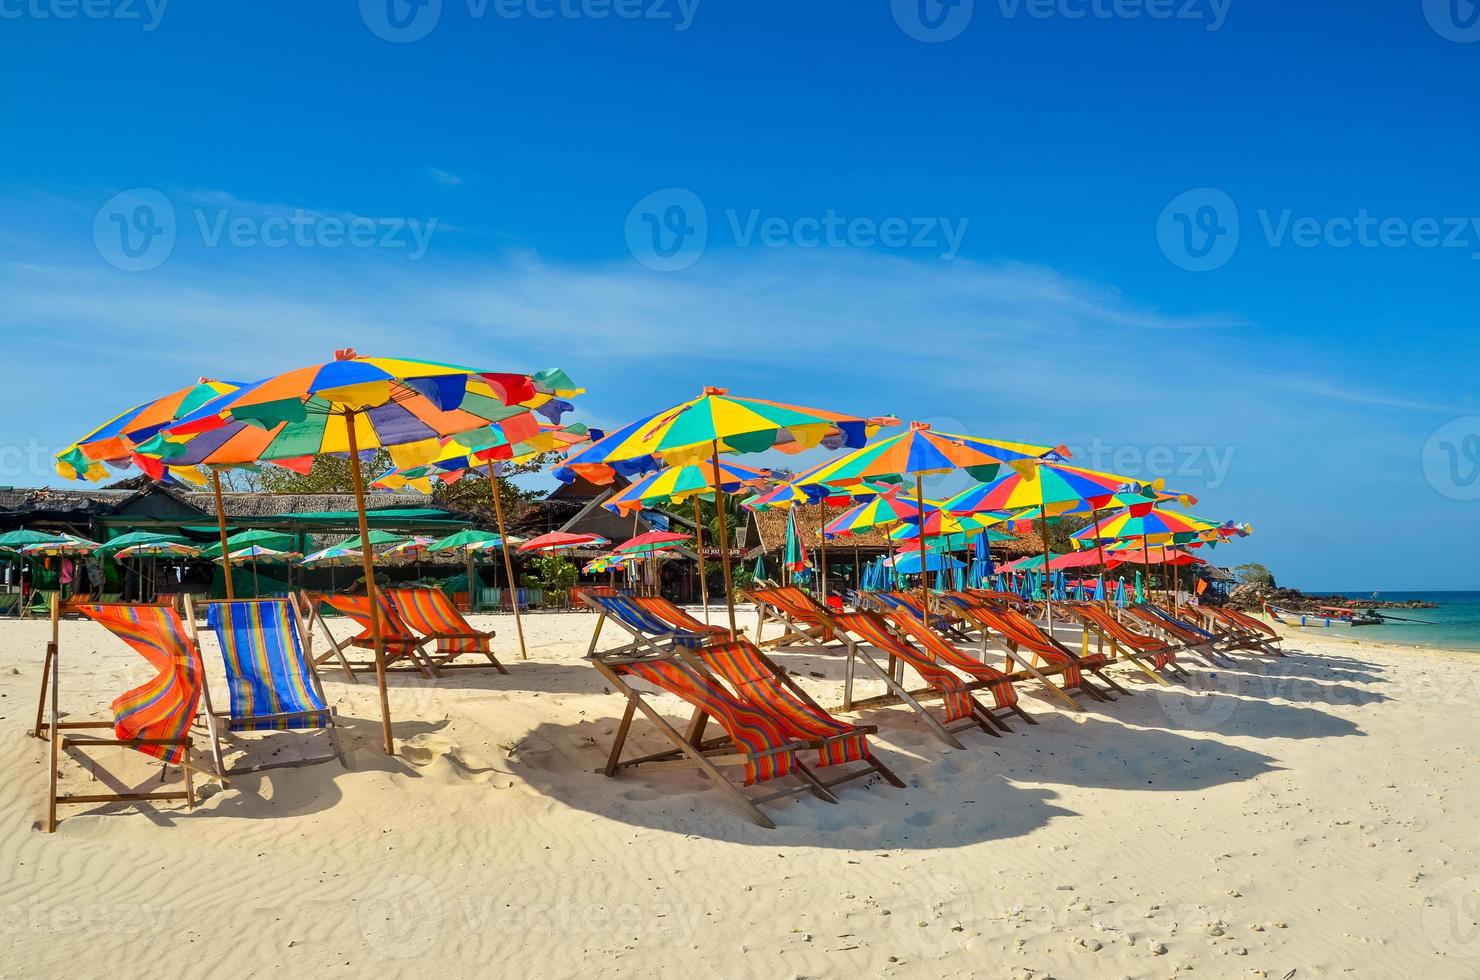 hav, ö, paraply, thailand, khai island phuket, solstolar och parasoller på en tropisk strand foto